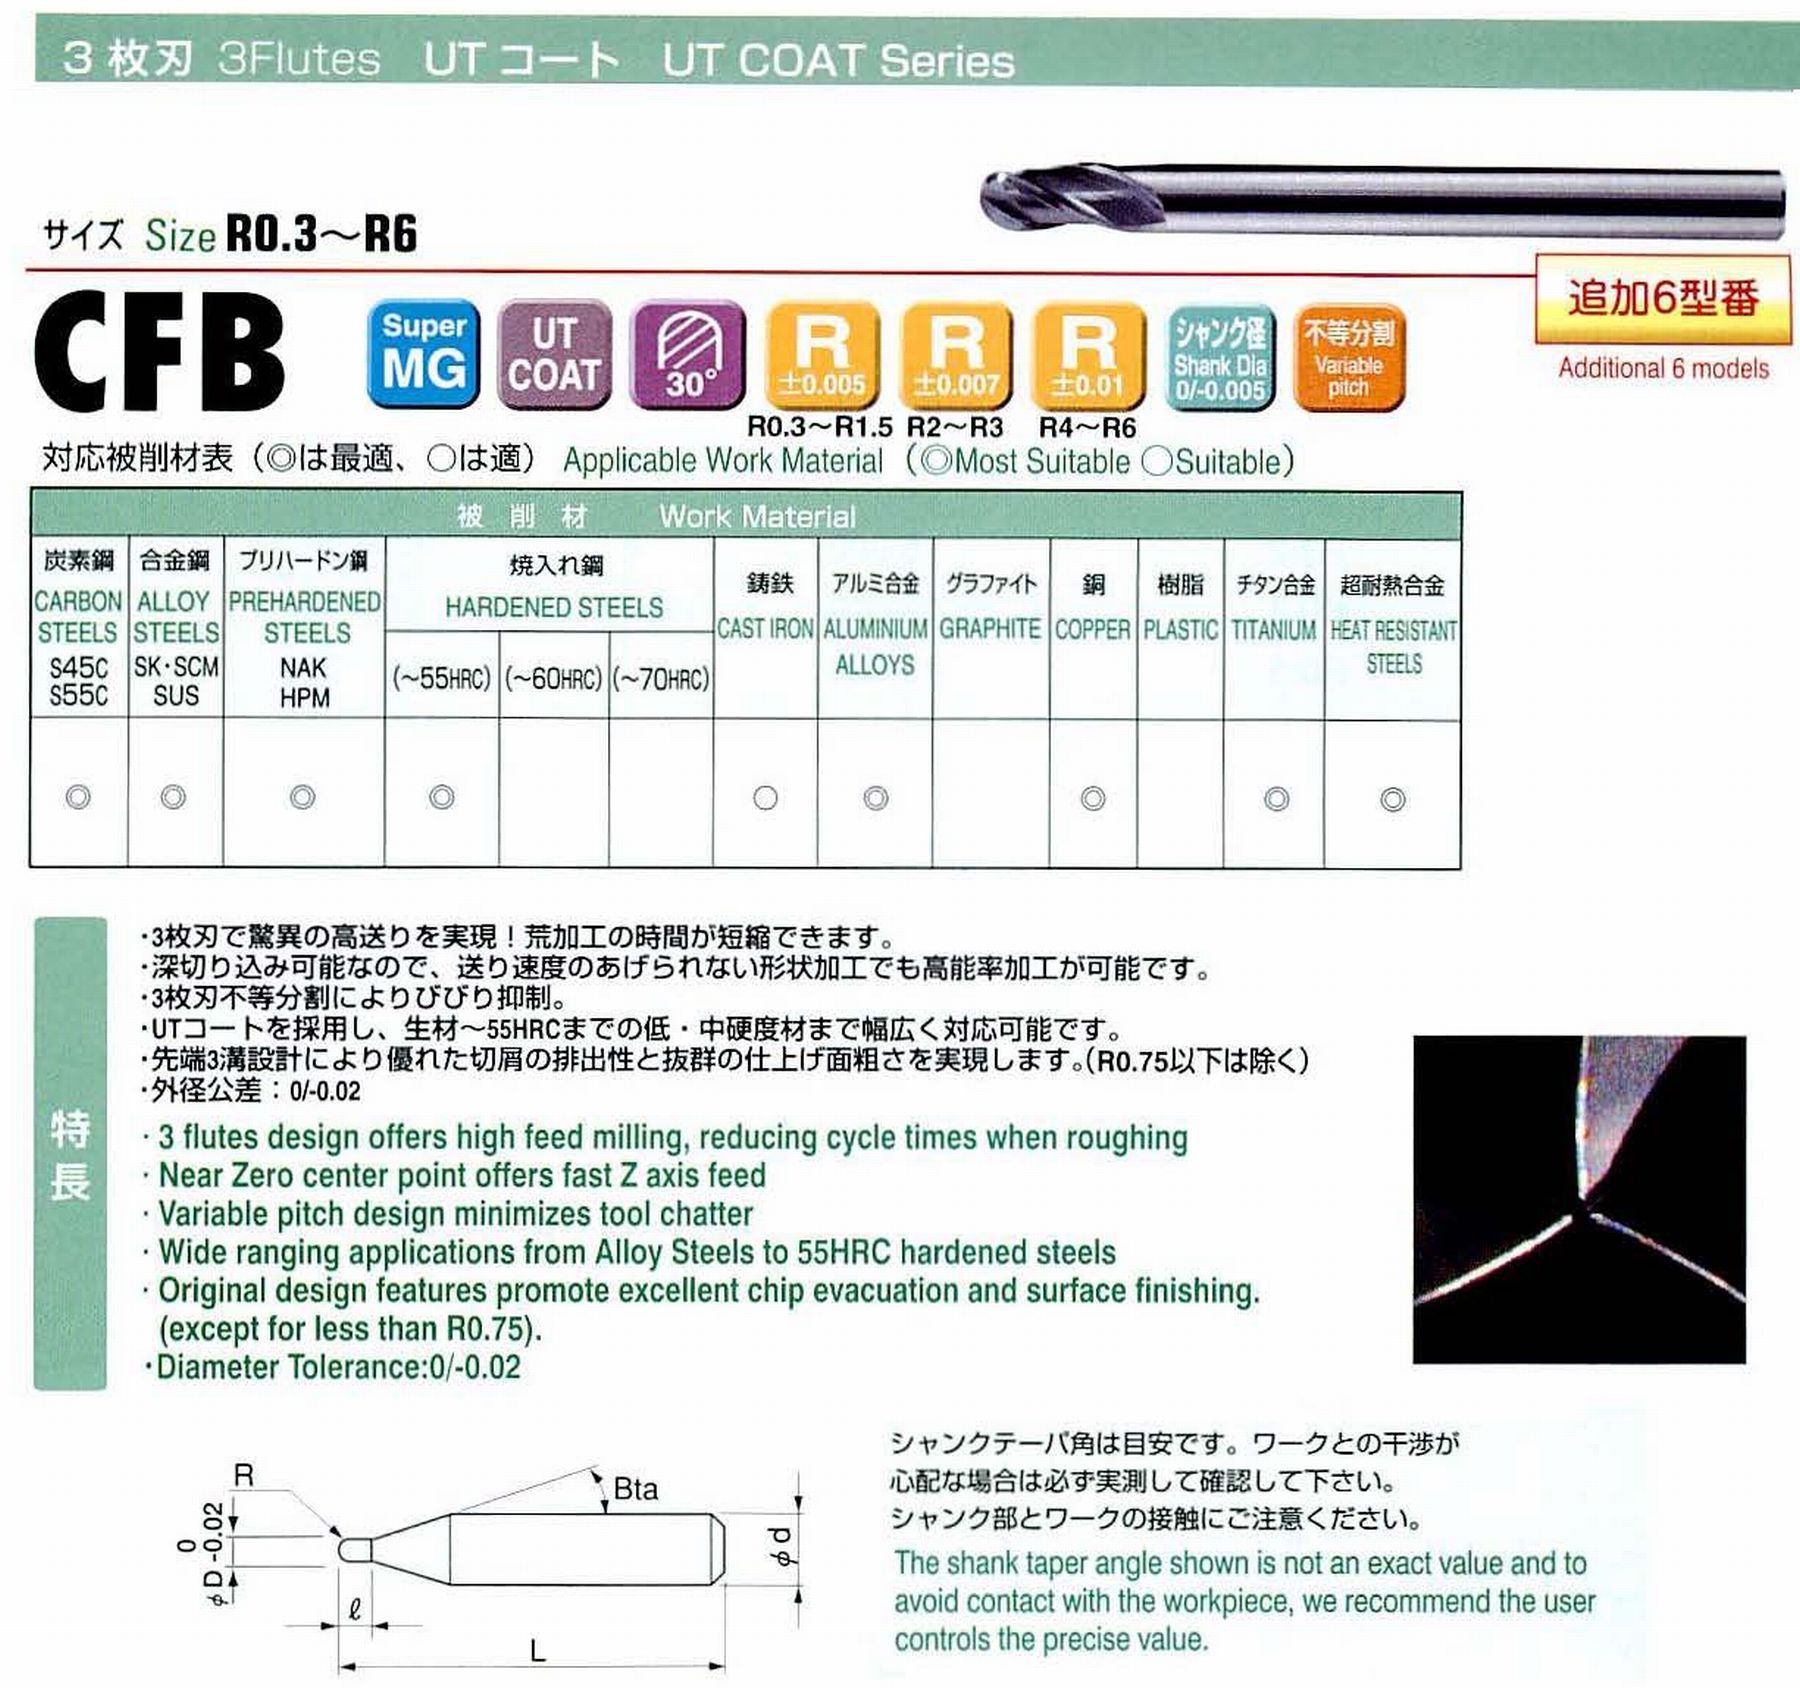 ユニオンツール 3枚刃 CFB3010-0150 ボール半径R0.5 刃長1.5 シャンクテーパ角16° 全長50 シャンク径4